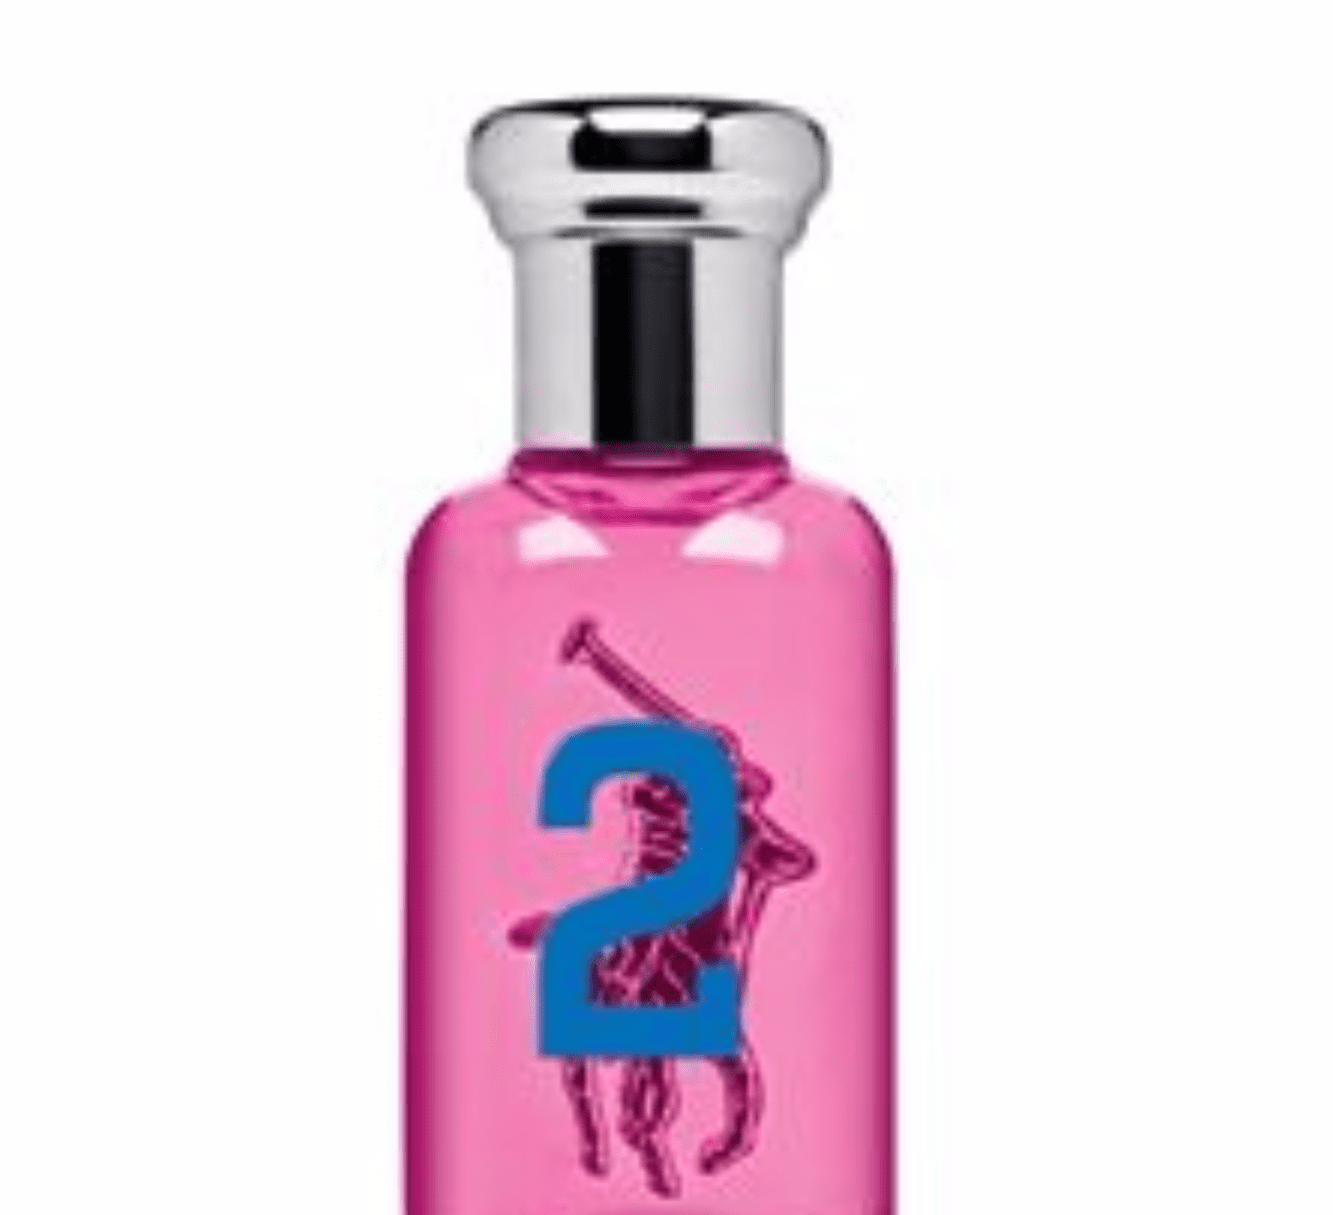 polo pink 2 perfume